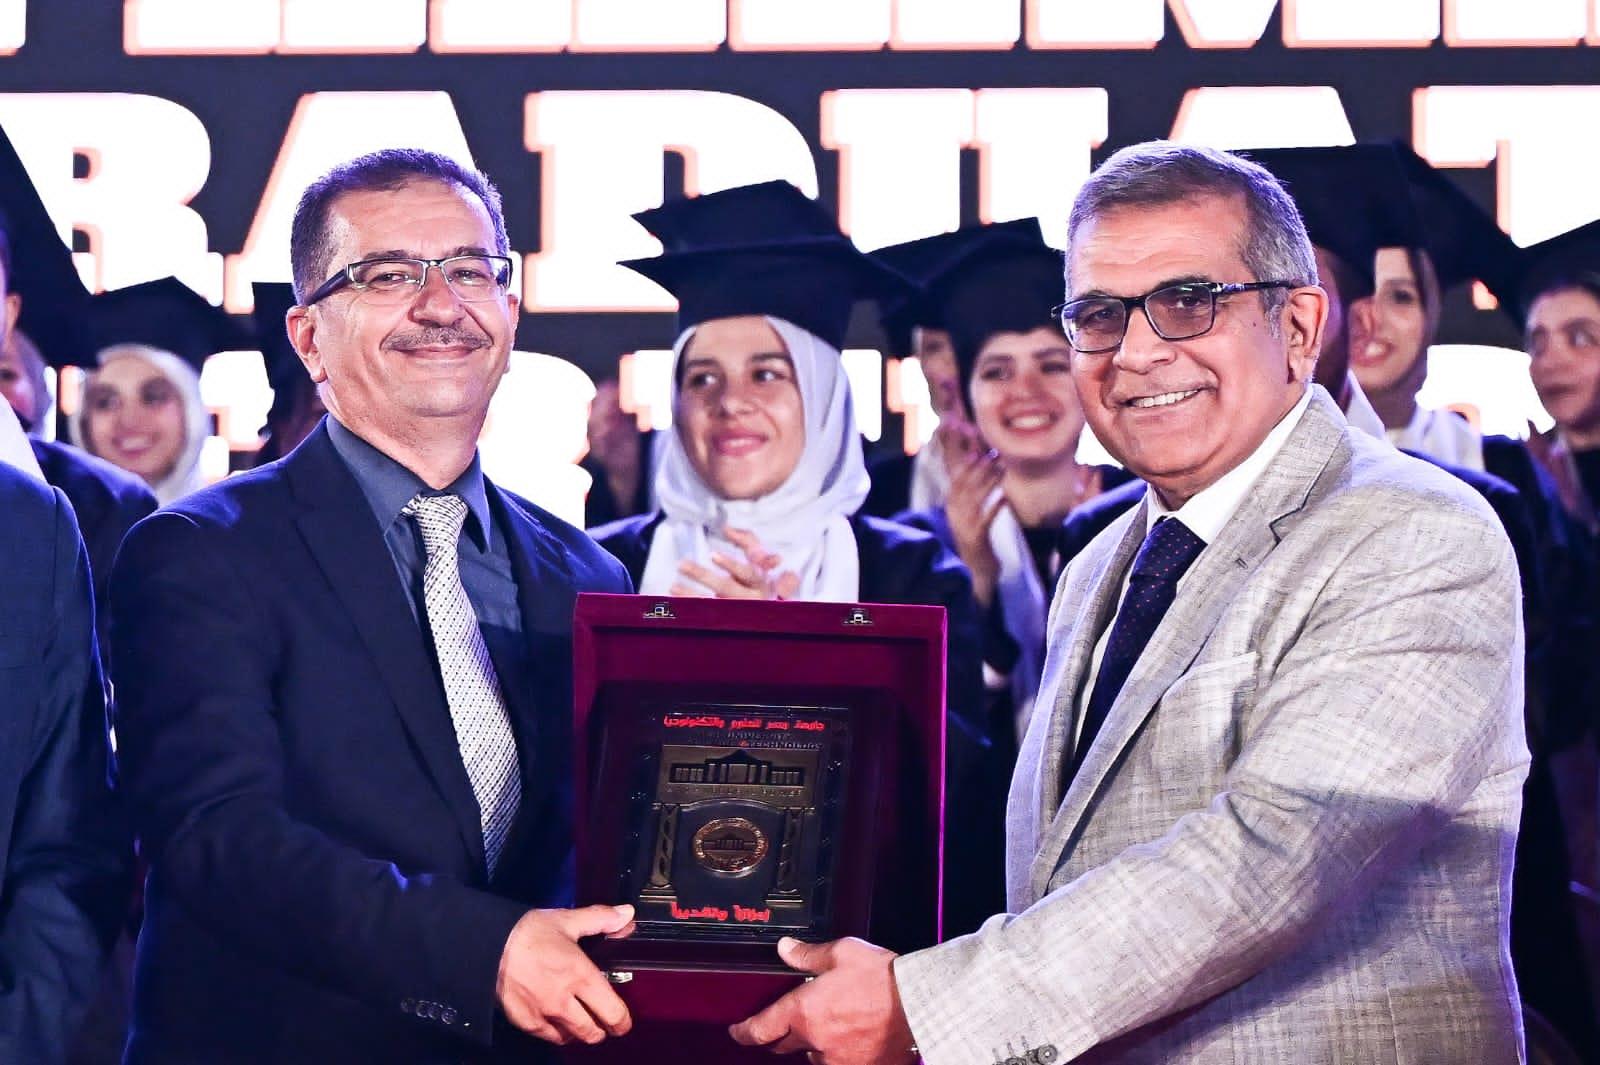 جامعة مصر للعلوم والتكنولوجيا تحتفل بتخرج دفعة جديدة من كلية "الصيدلة" فى حفل مبهر 